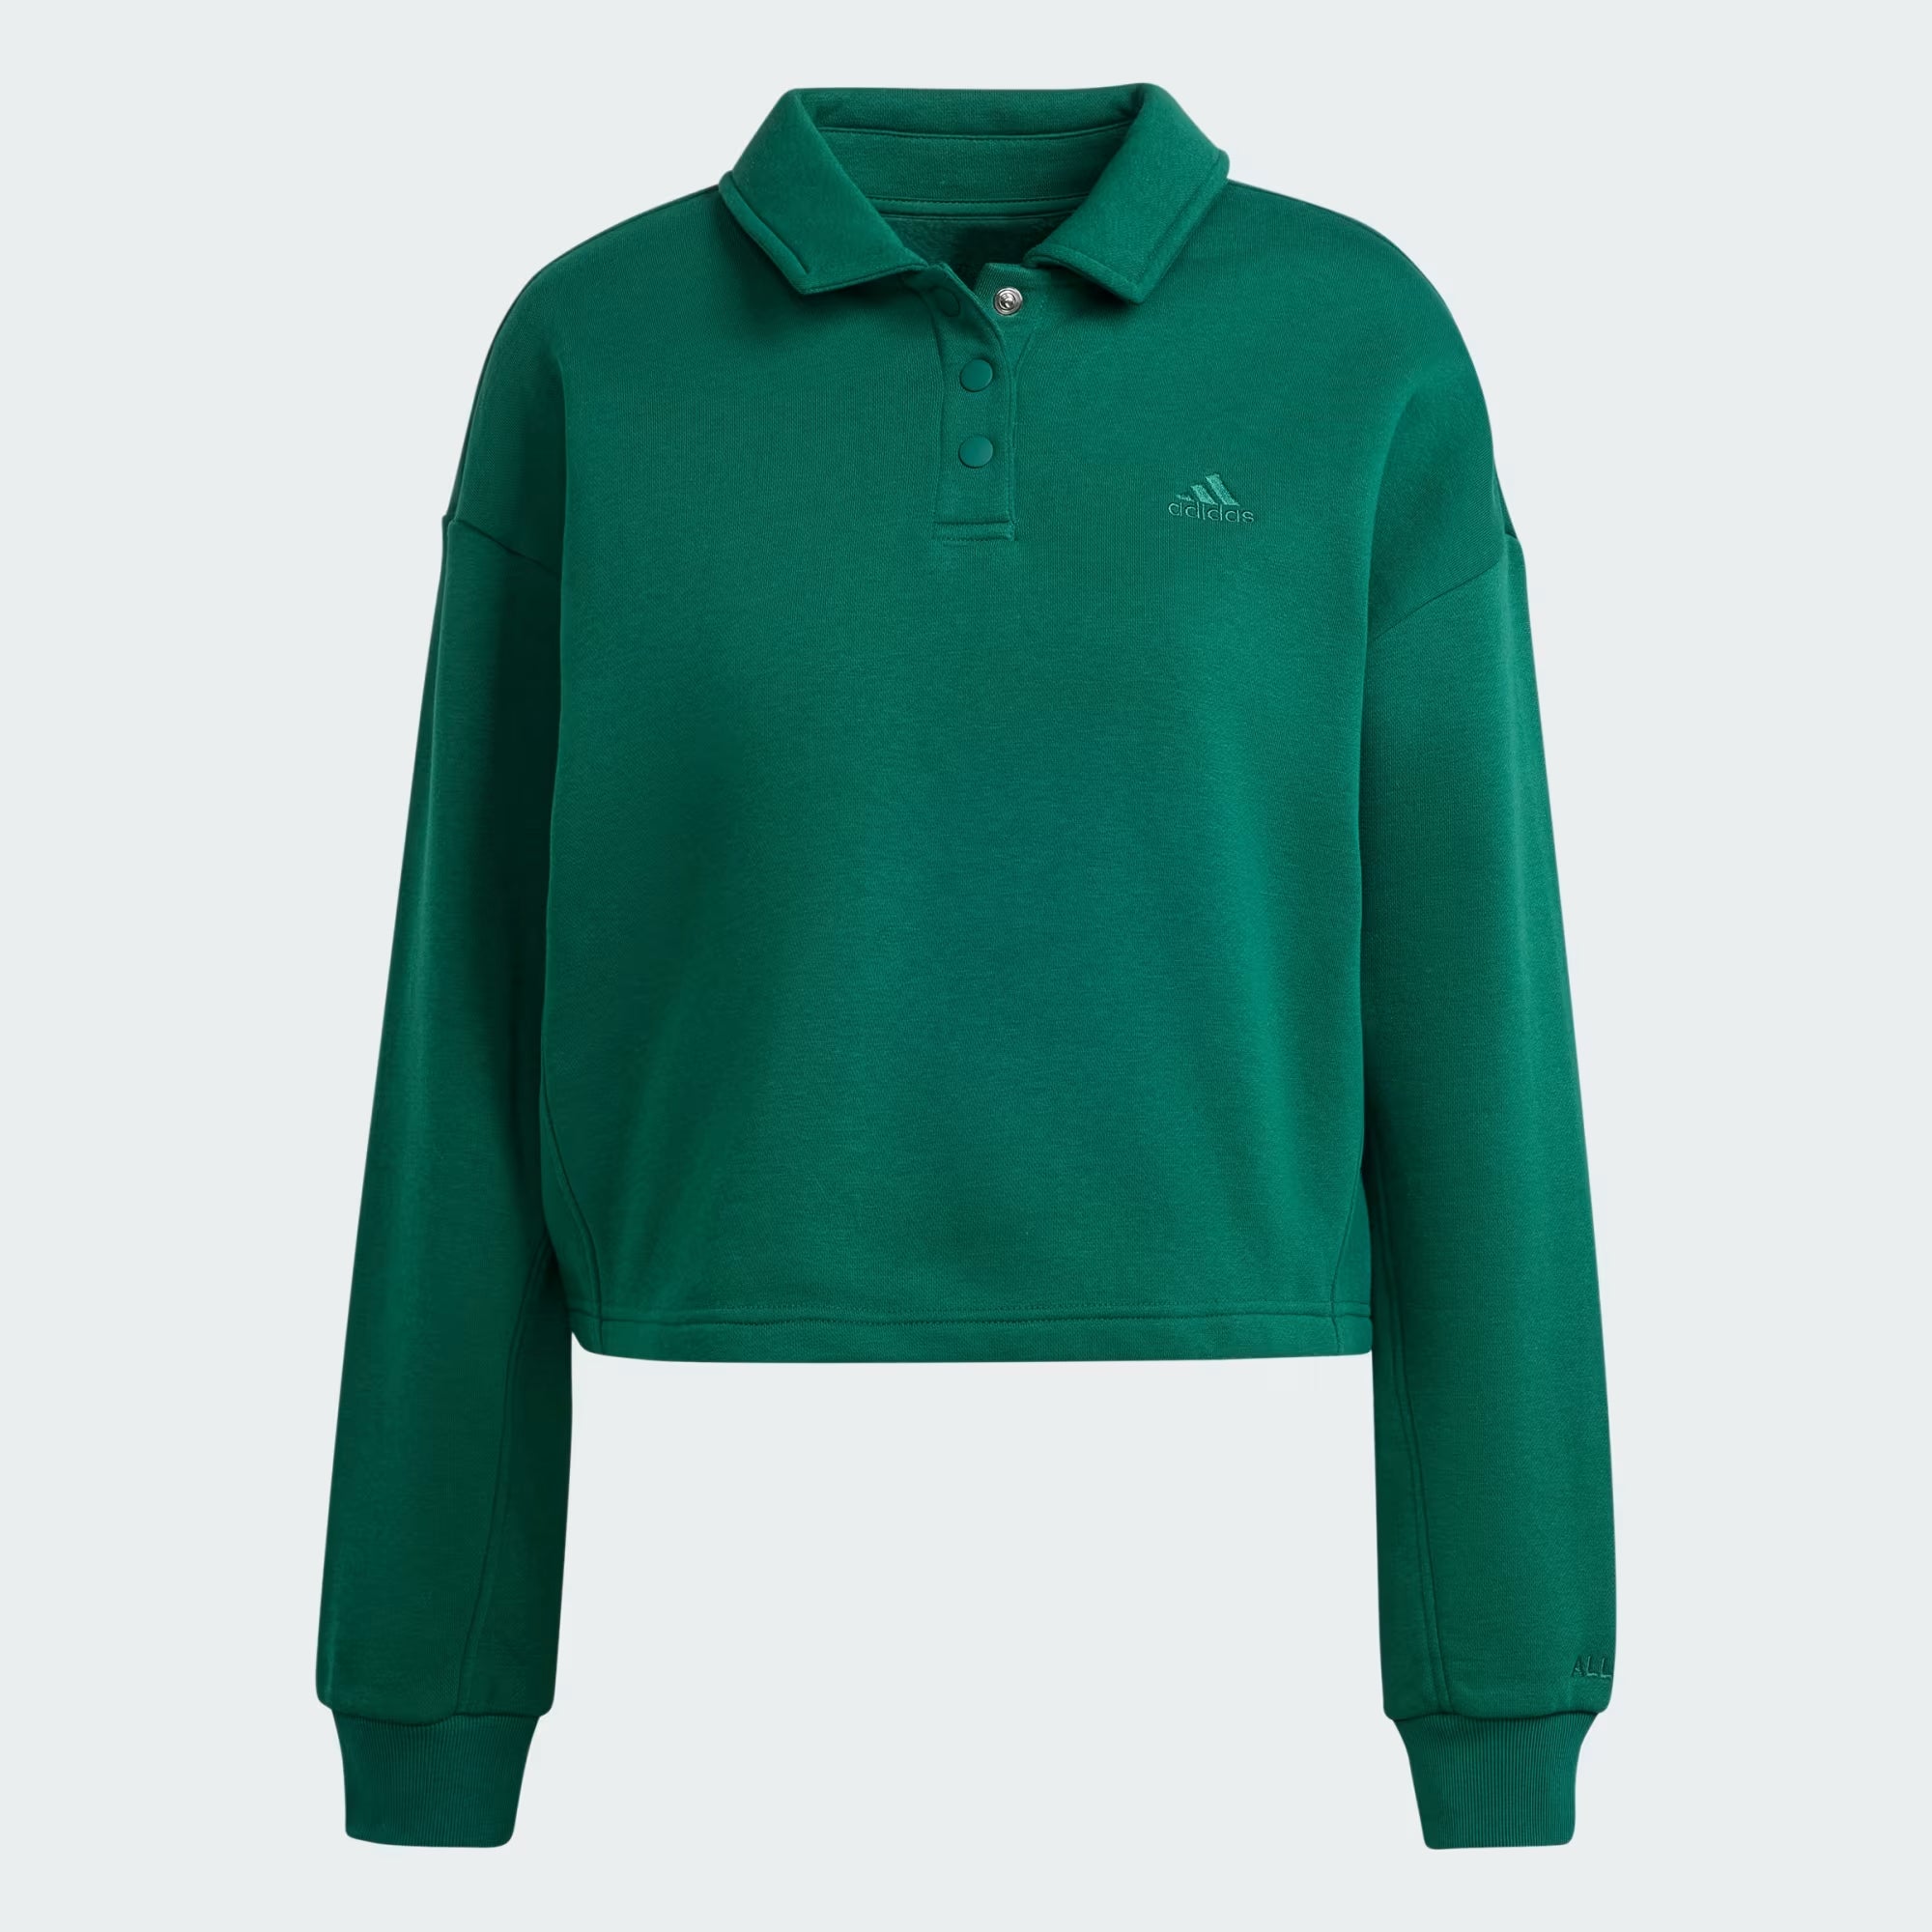 Adidas All Szn Fleece Graphic Polo Sweatshirt - Women